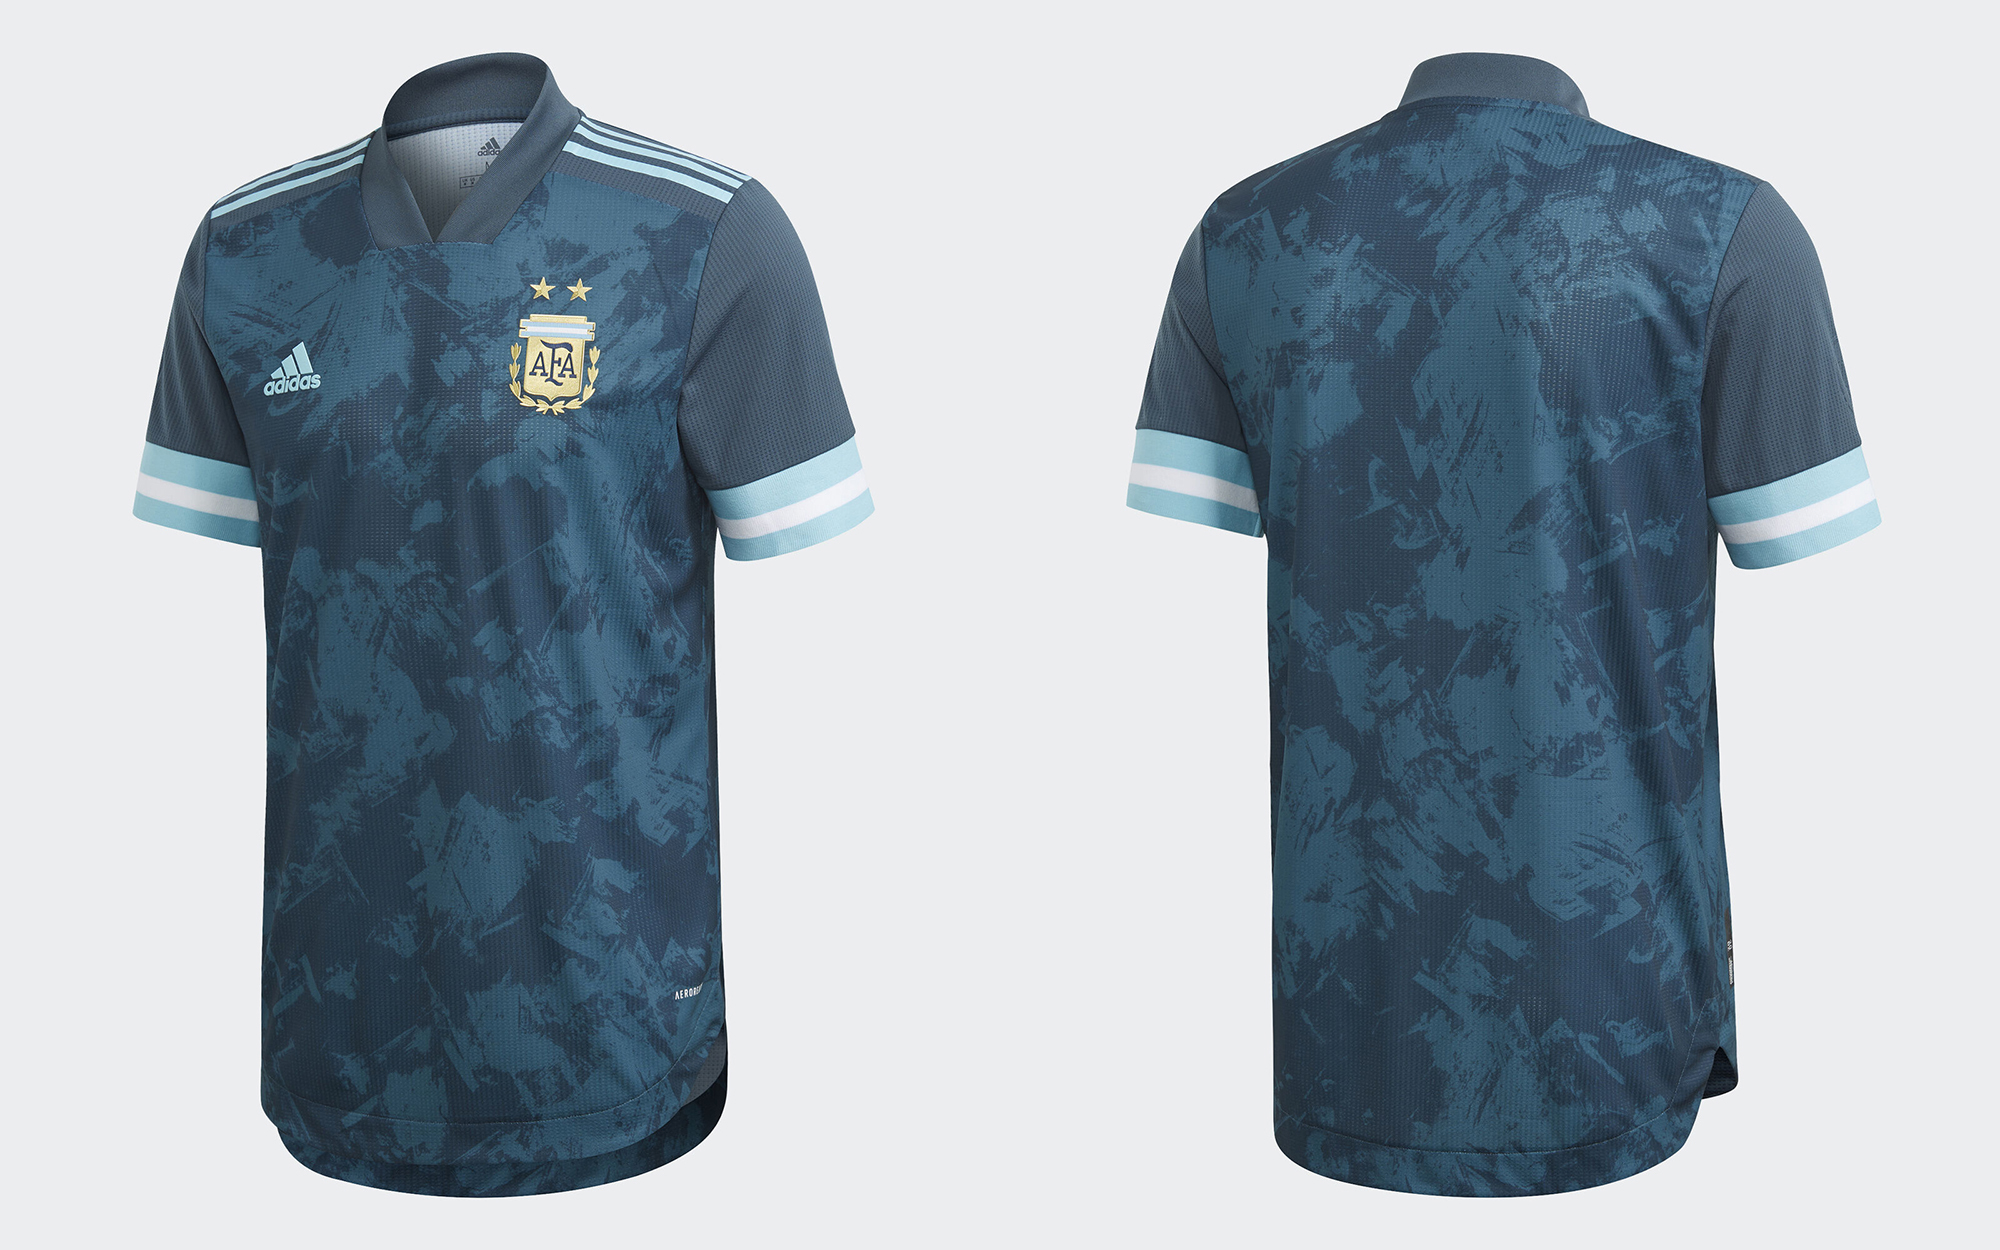 Camisetas_de_Futbol_Argentina_2020_1.jpg